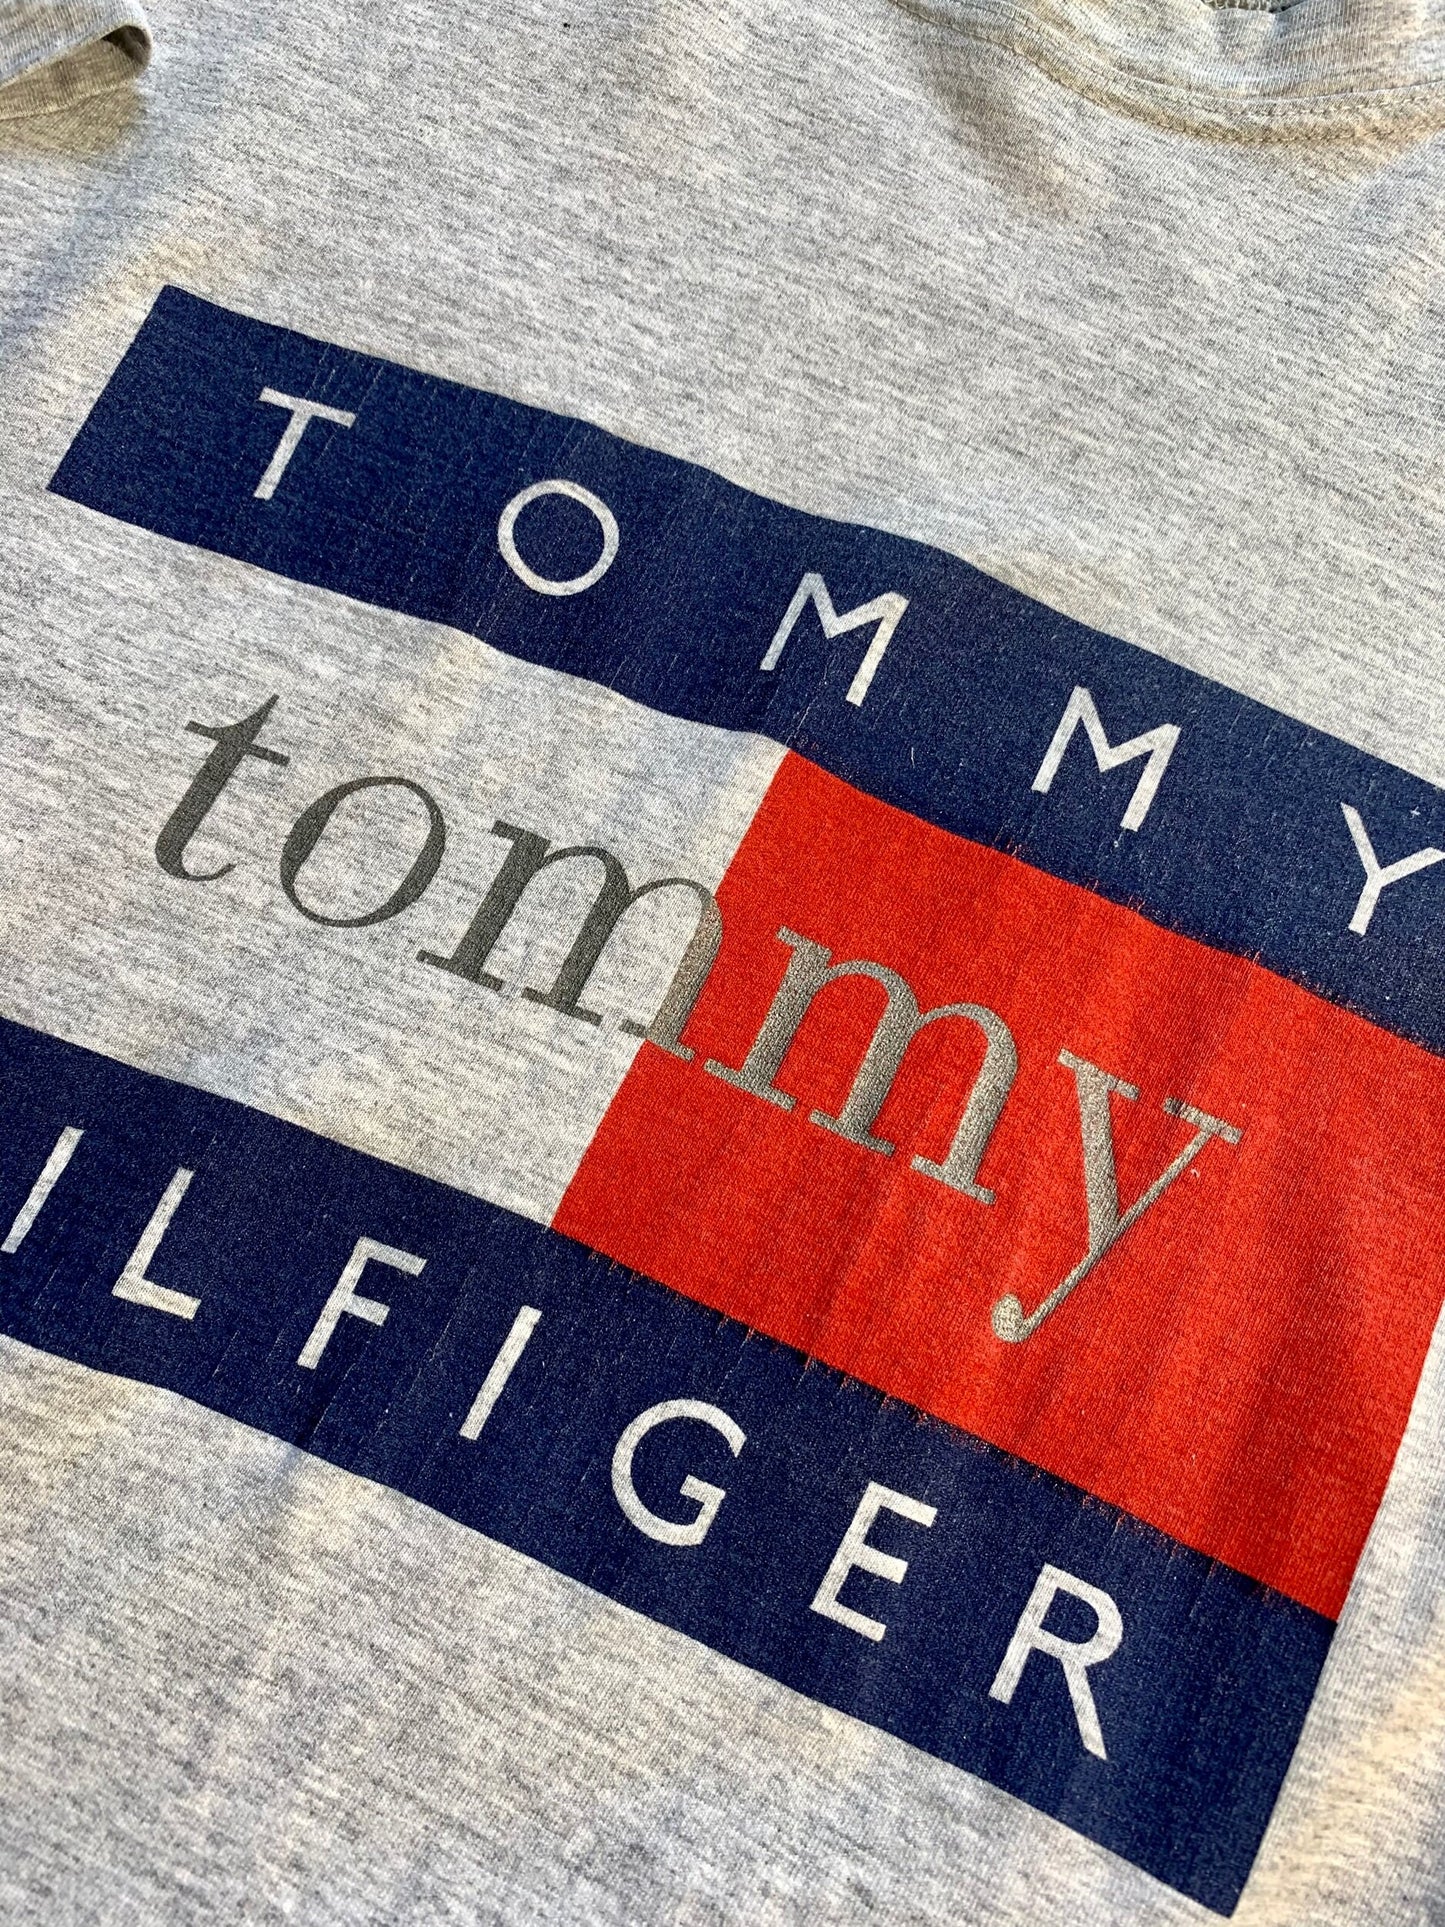 Vintage Tommy Hilfiger T-Shirt